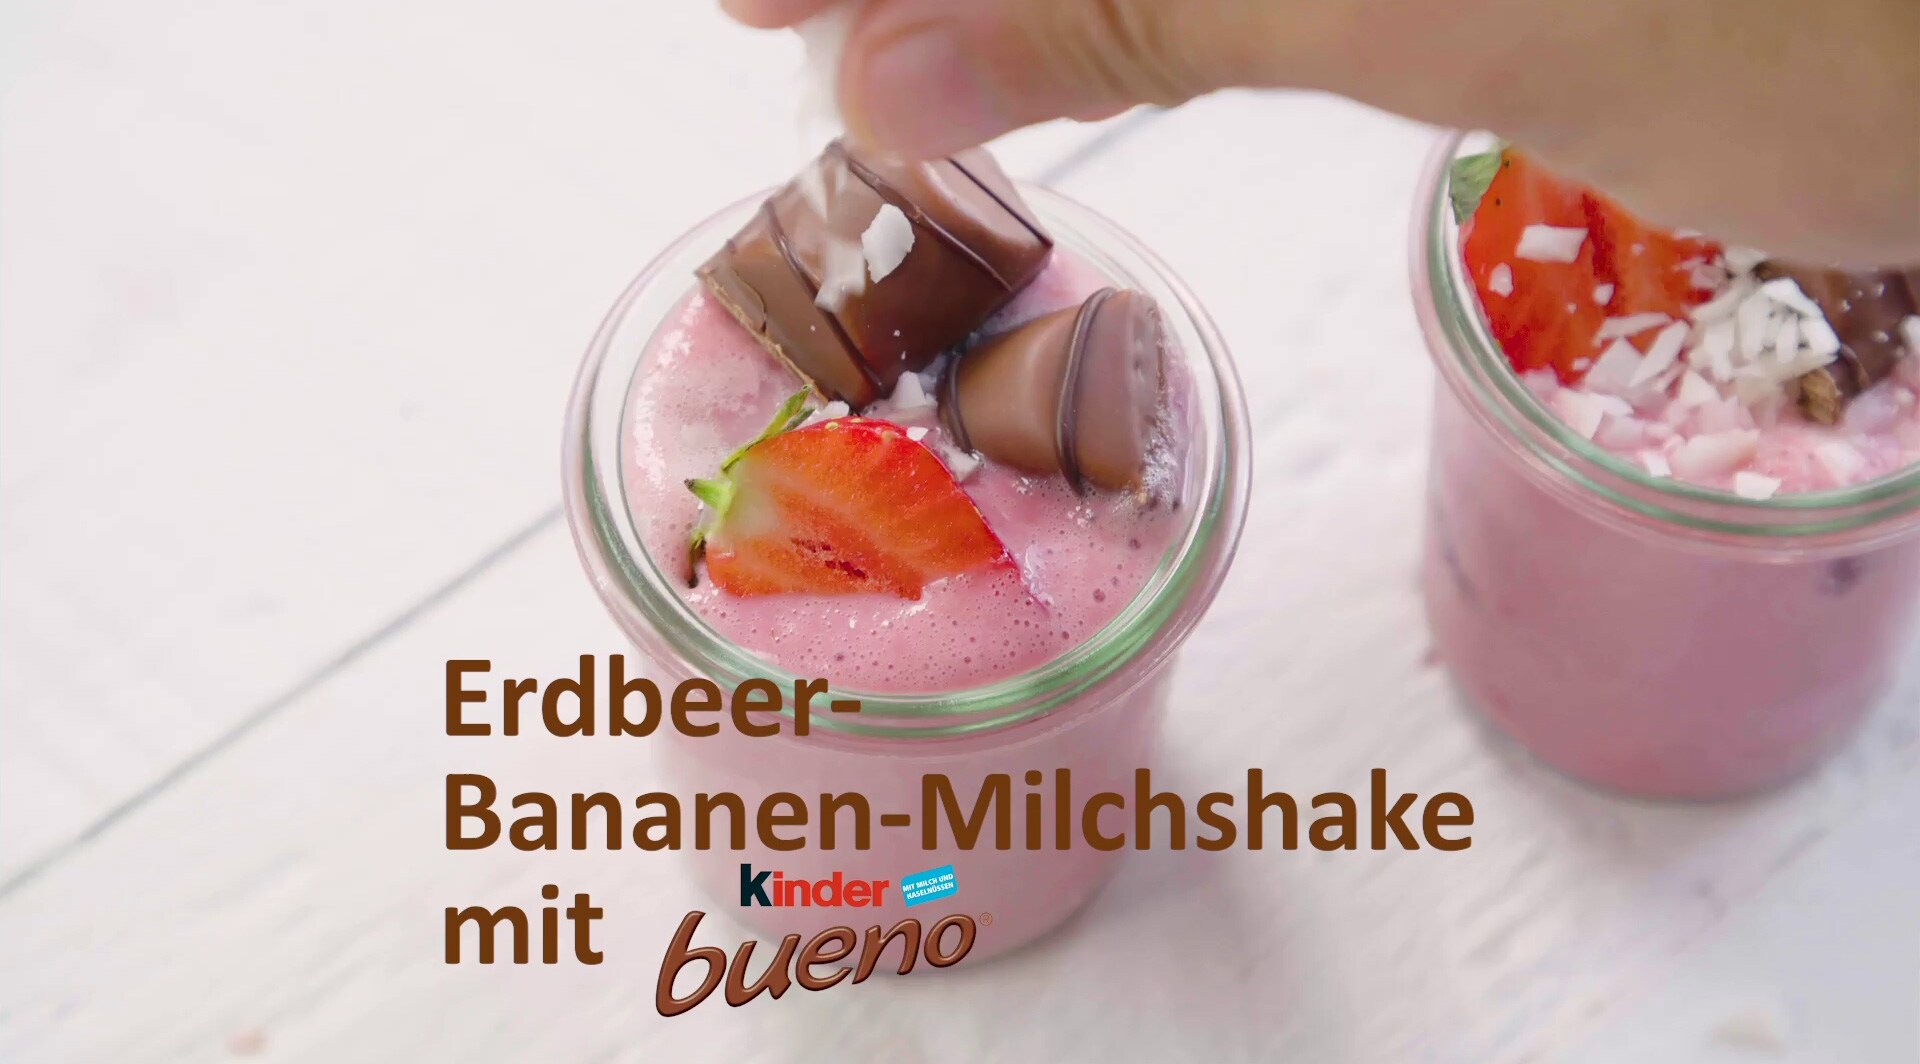 Erdbeer-Bananen-Milchshake mit kinder bueno - kinder Deutschland